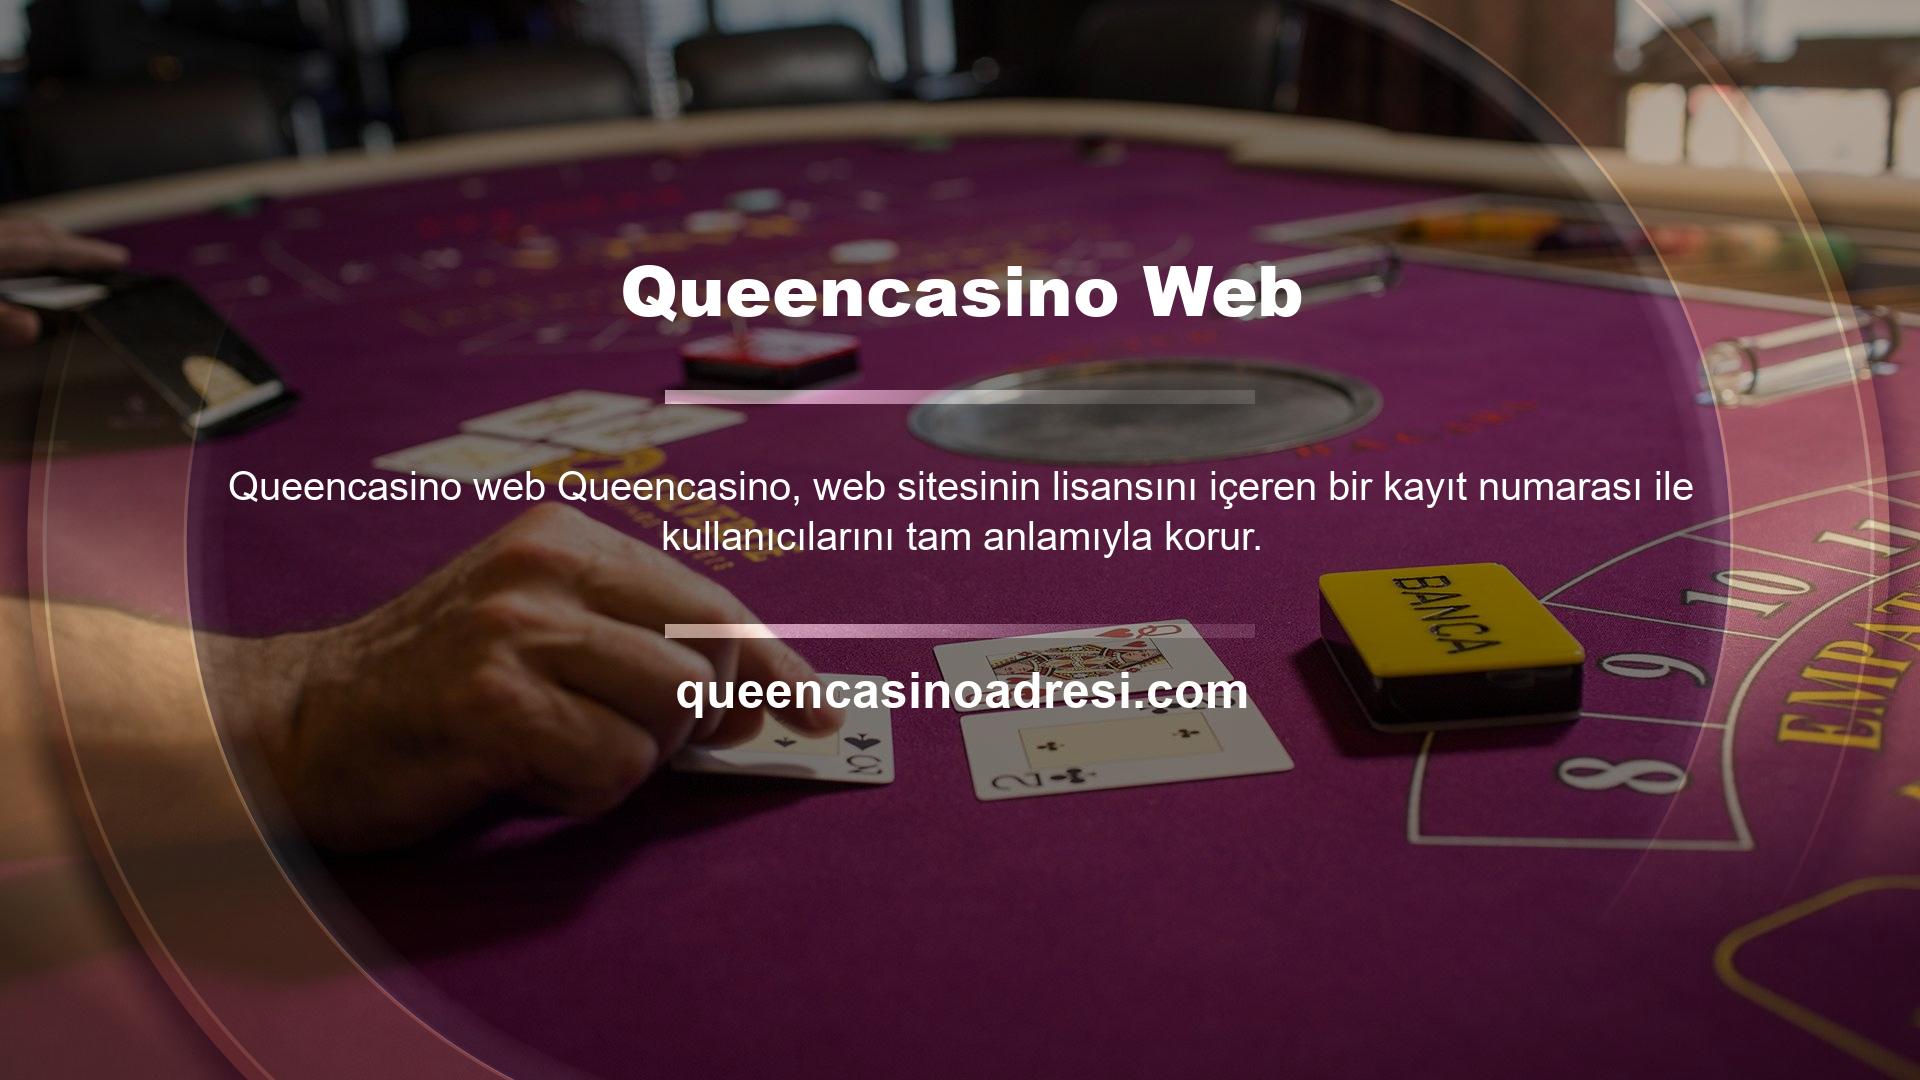 Queencasino web